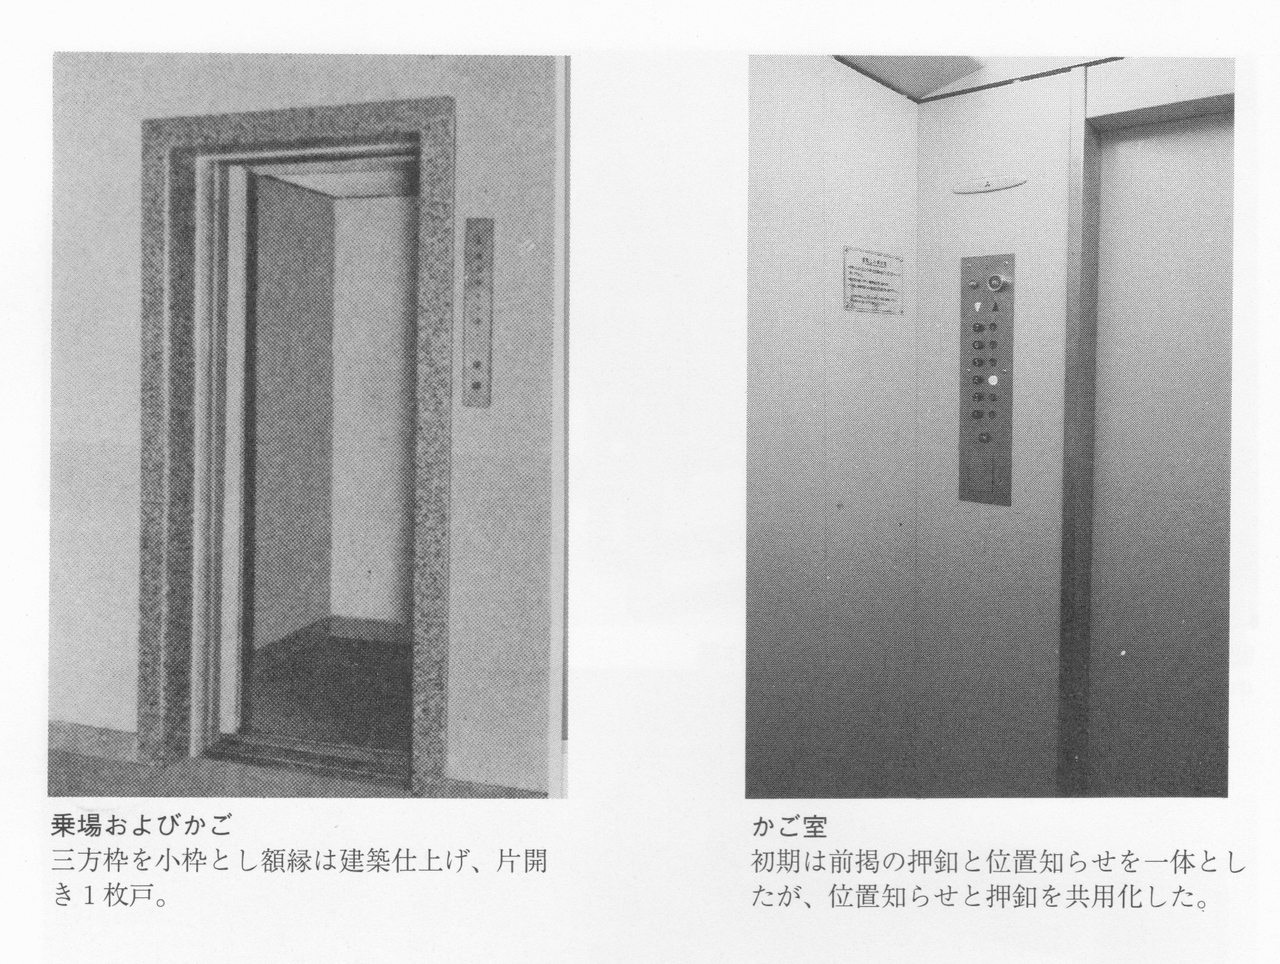 三菱製のKJ型エレベーター